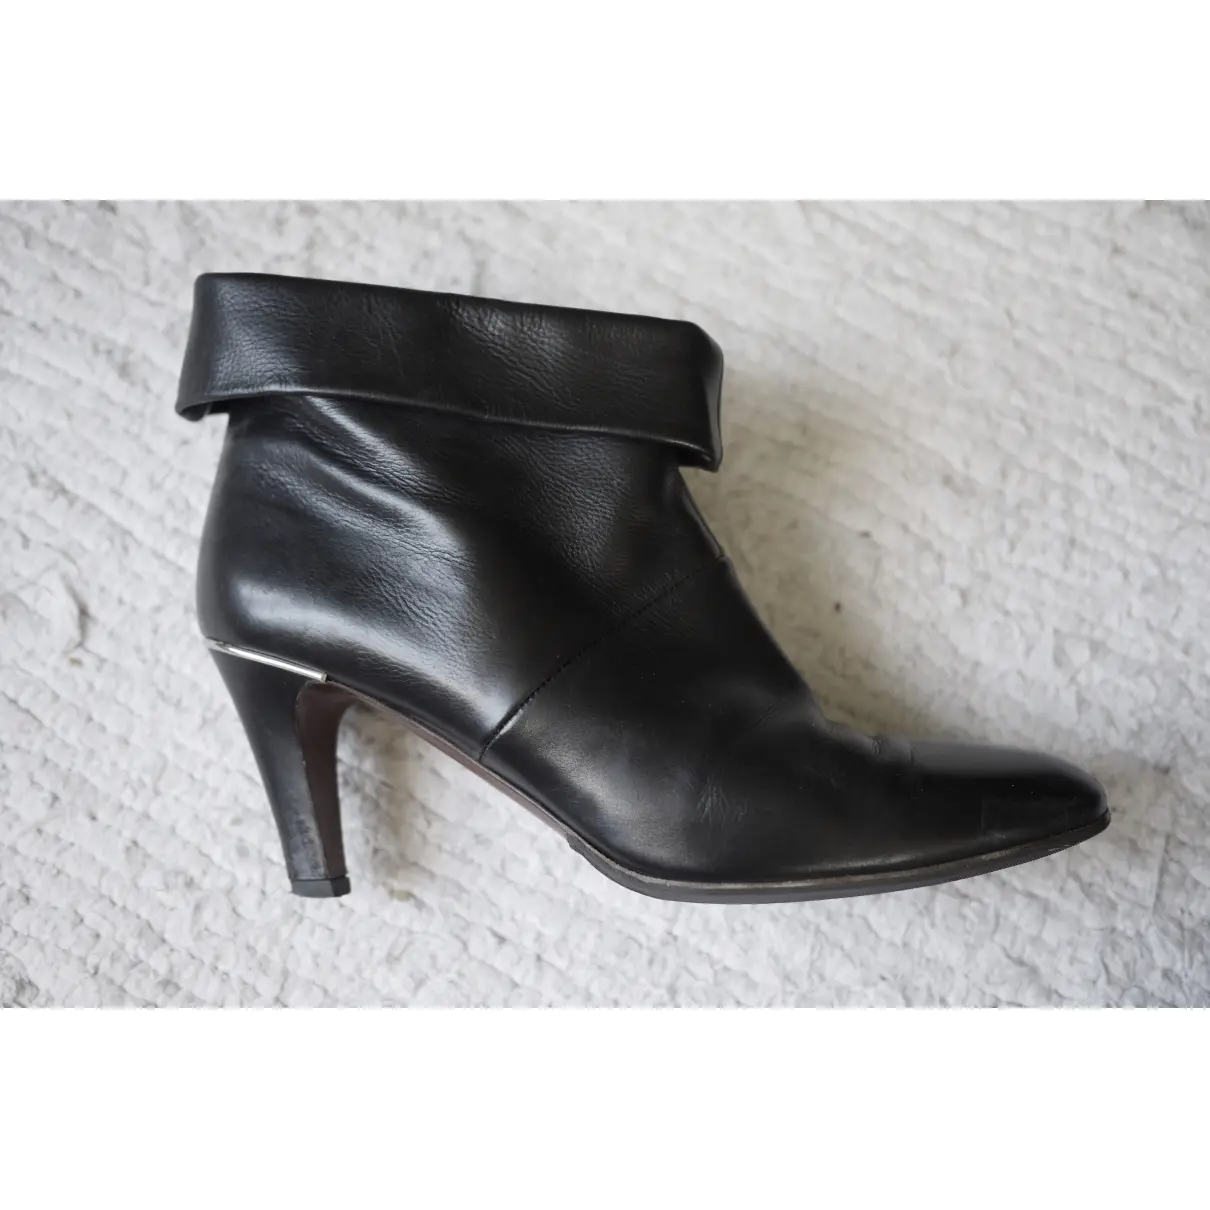 Buy Michel Vivien Leather ankle boots online